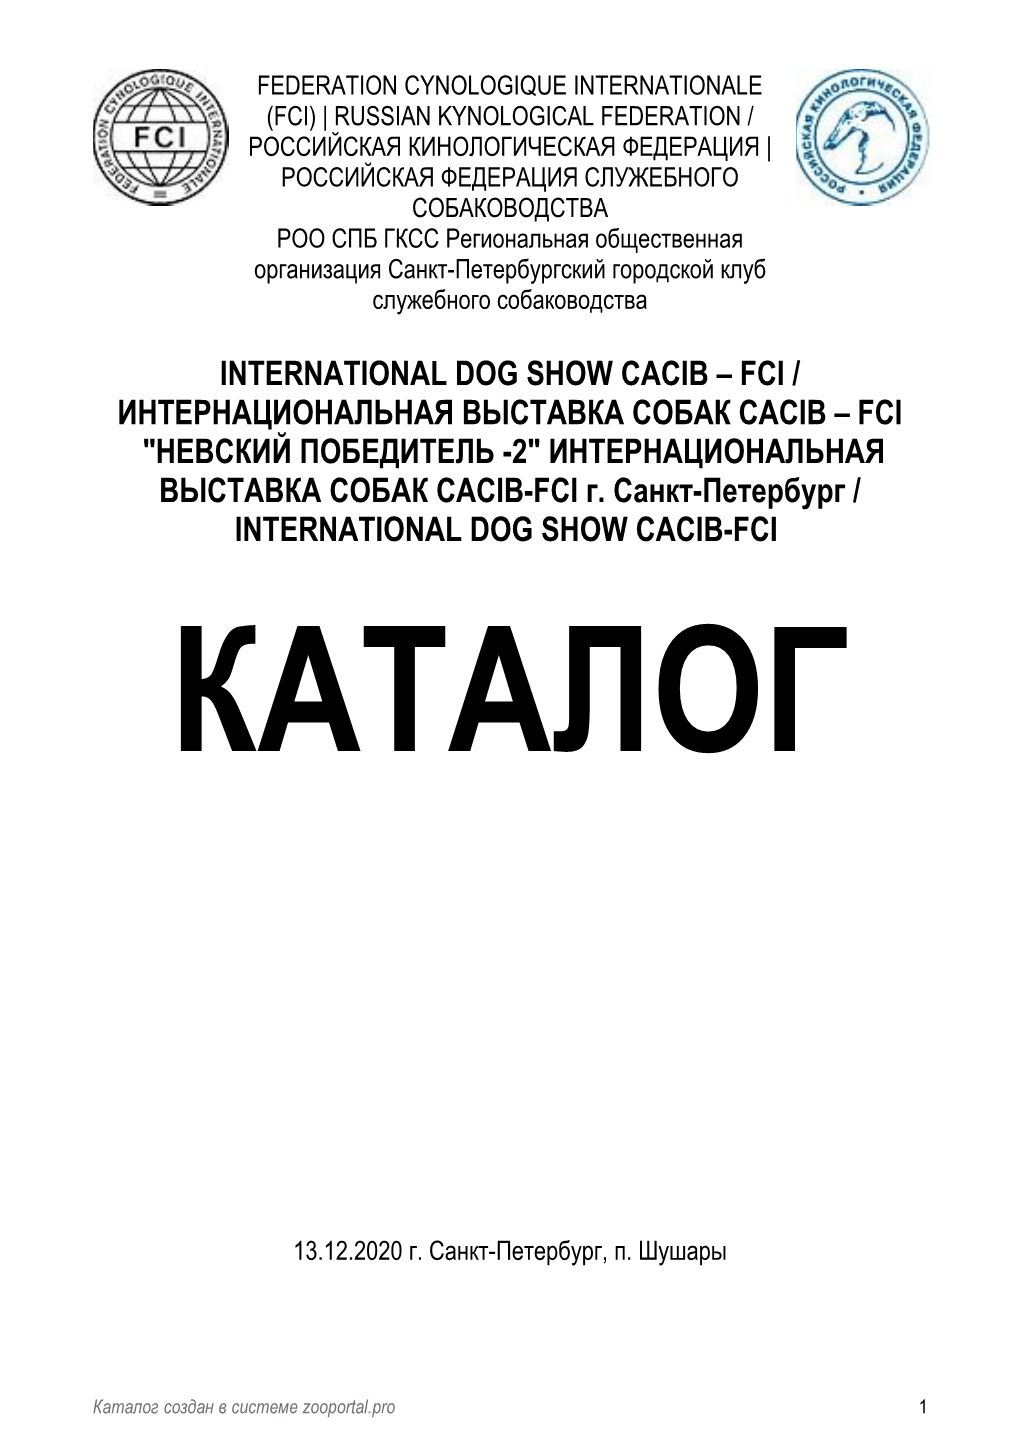 Fci / Интернациональная Выставка Собак Cacib – Fci "Невский Победитель -2" Интернациональная Выставка Собак Cacib-Fci Г